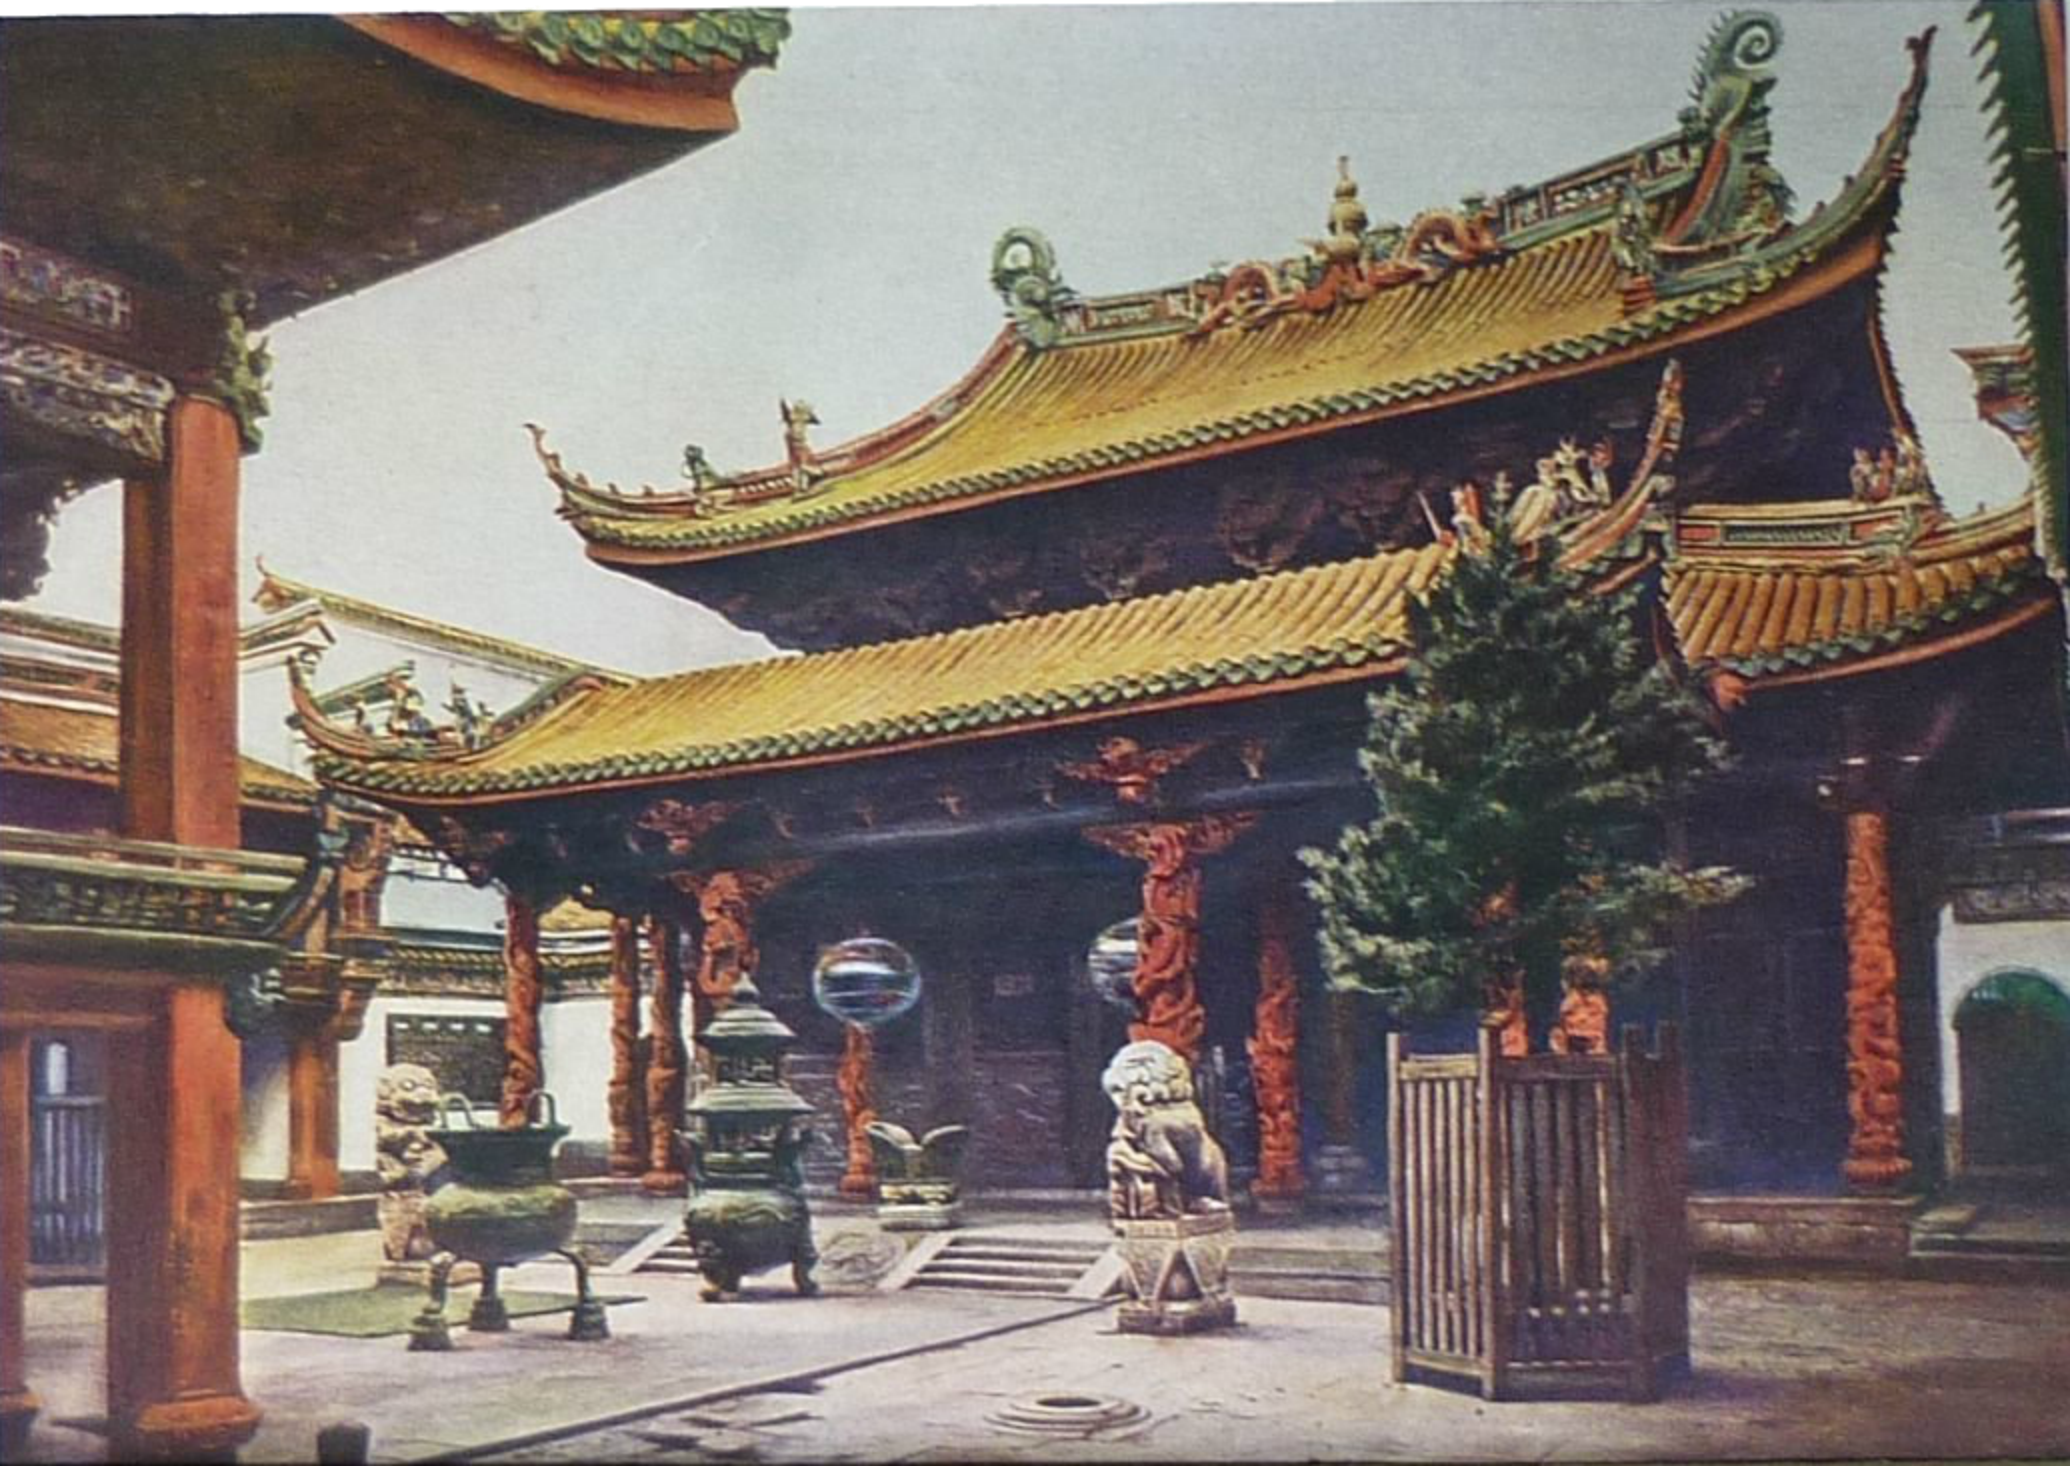 Ningbo's Tianhou Palace c. 1870